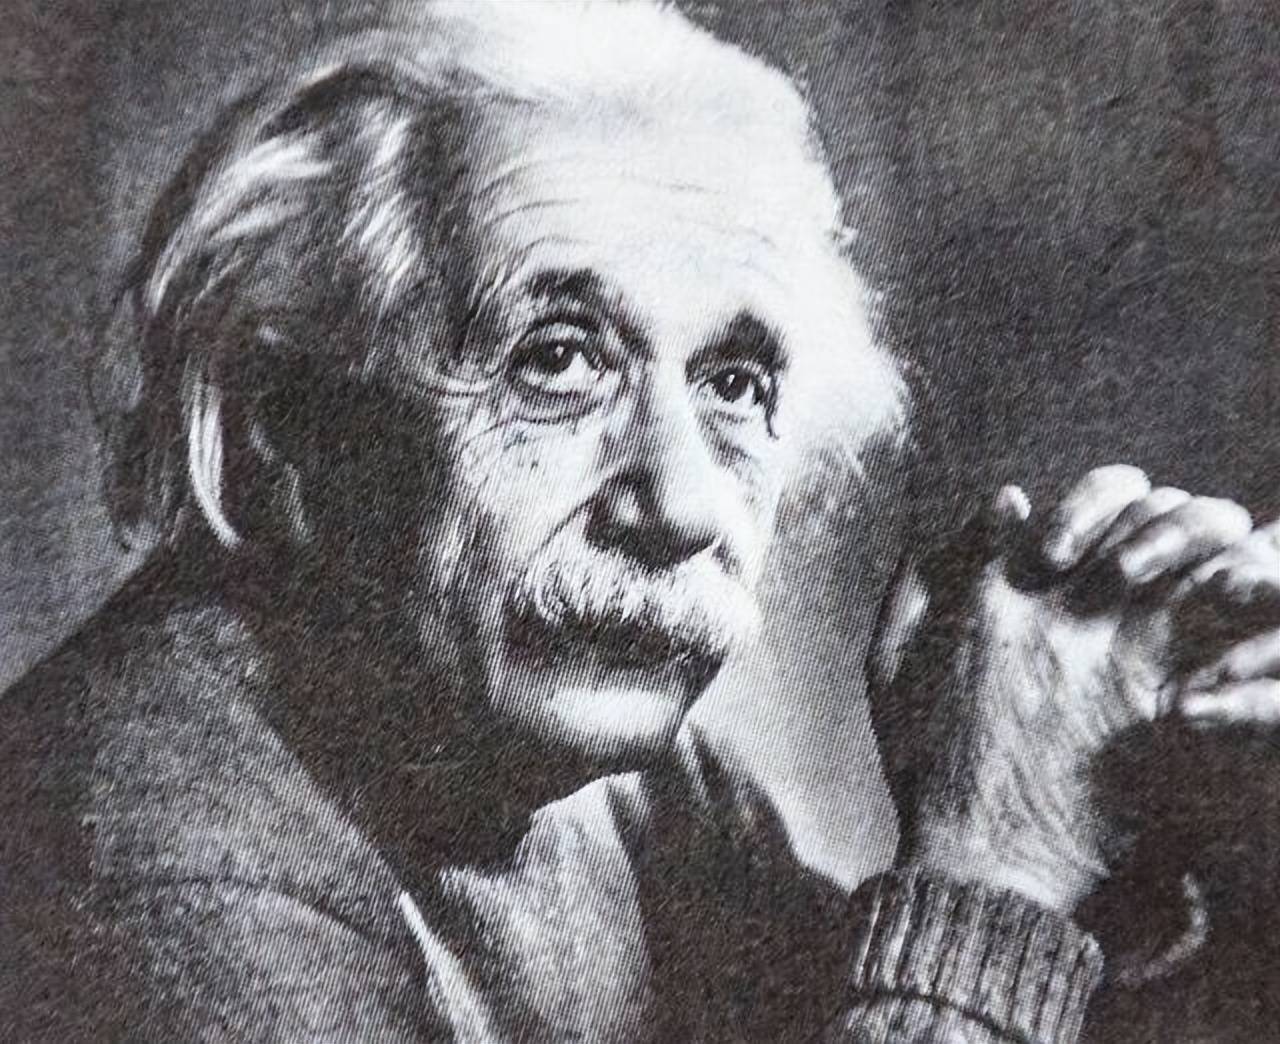 爱因斯坦死前说的最后一句话,在告诉人们什么?